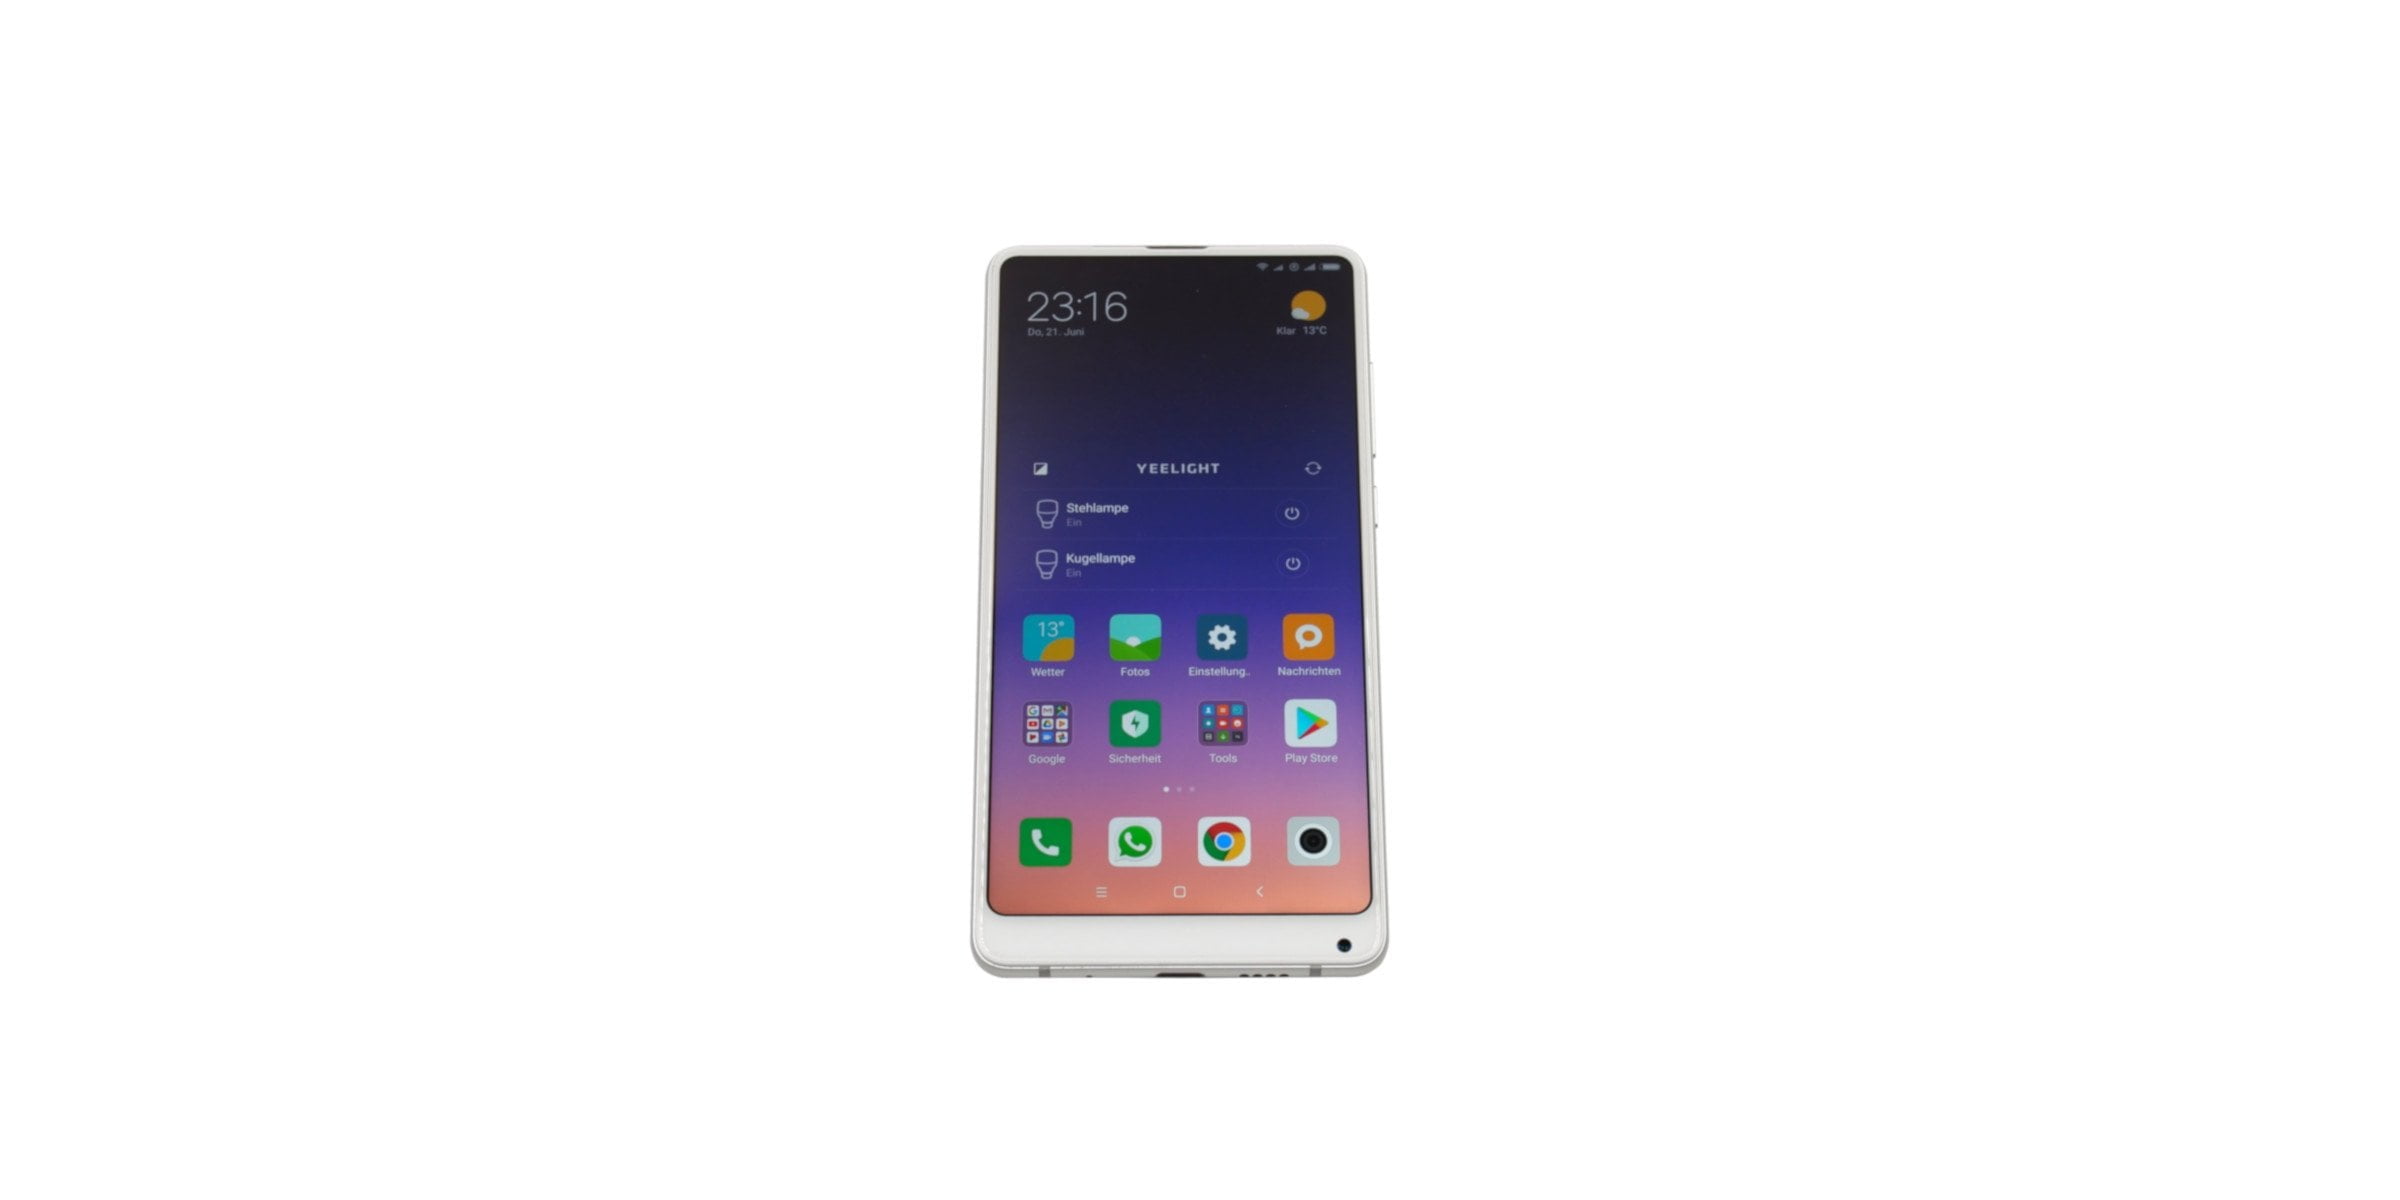 Xiaomi présente un écran de smartphone sans caméra visible - Les Numériques